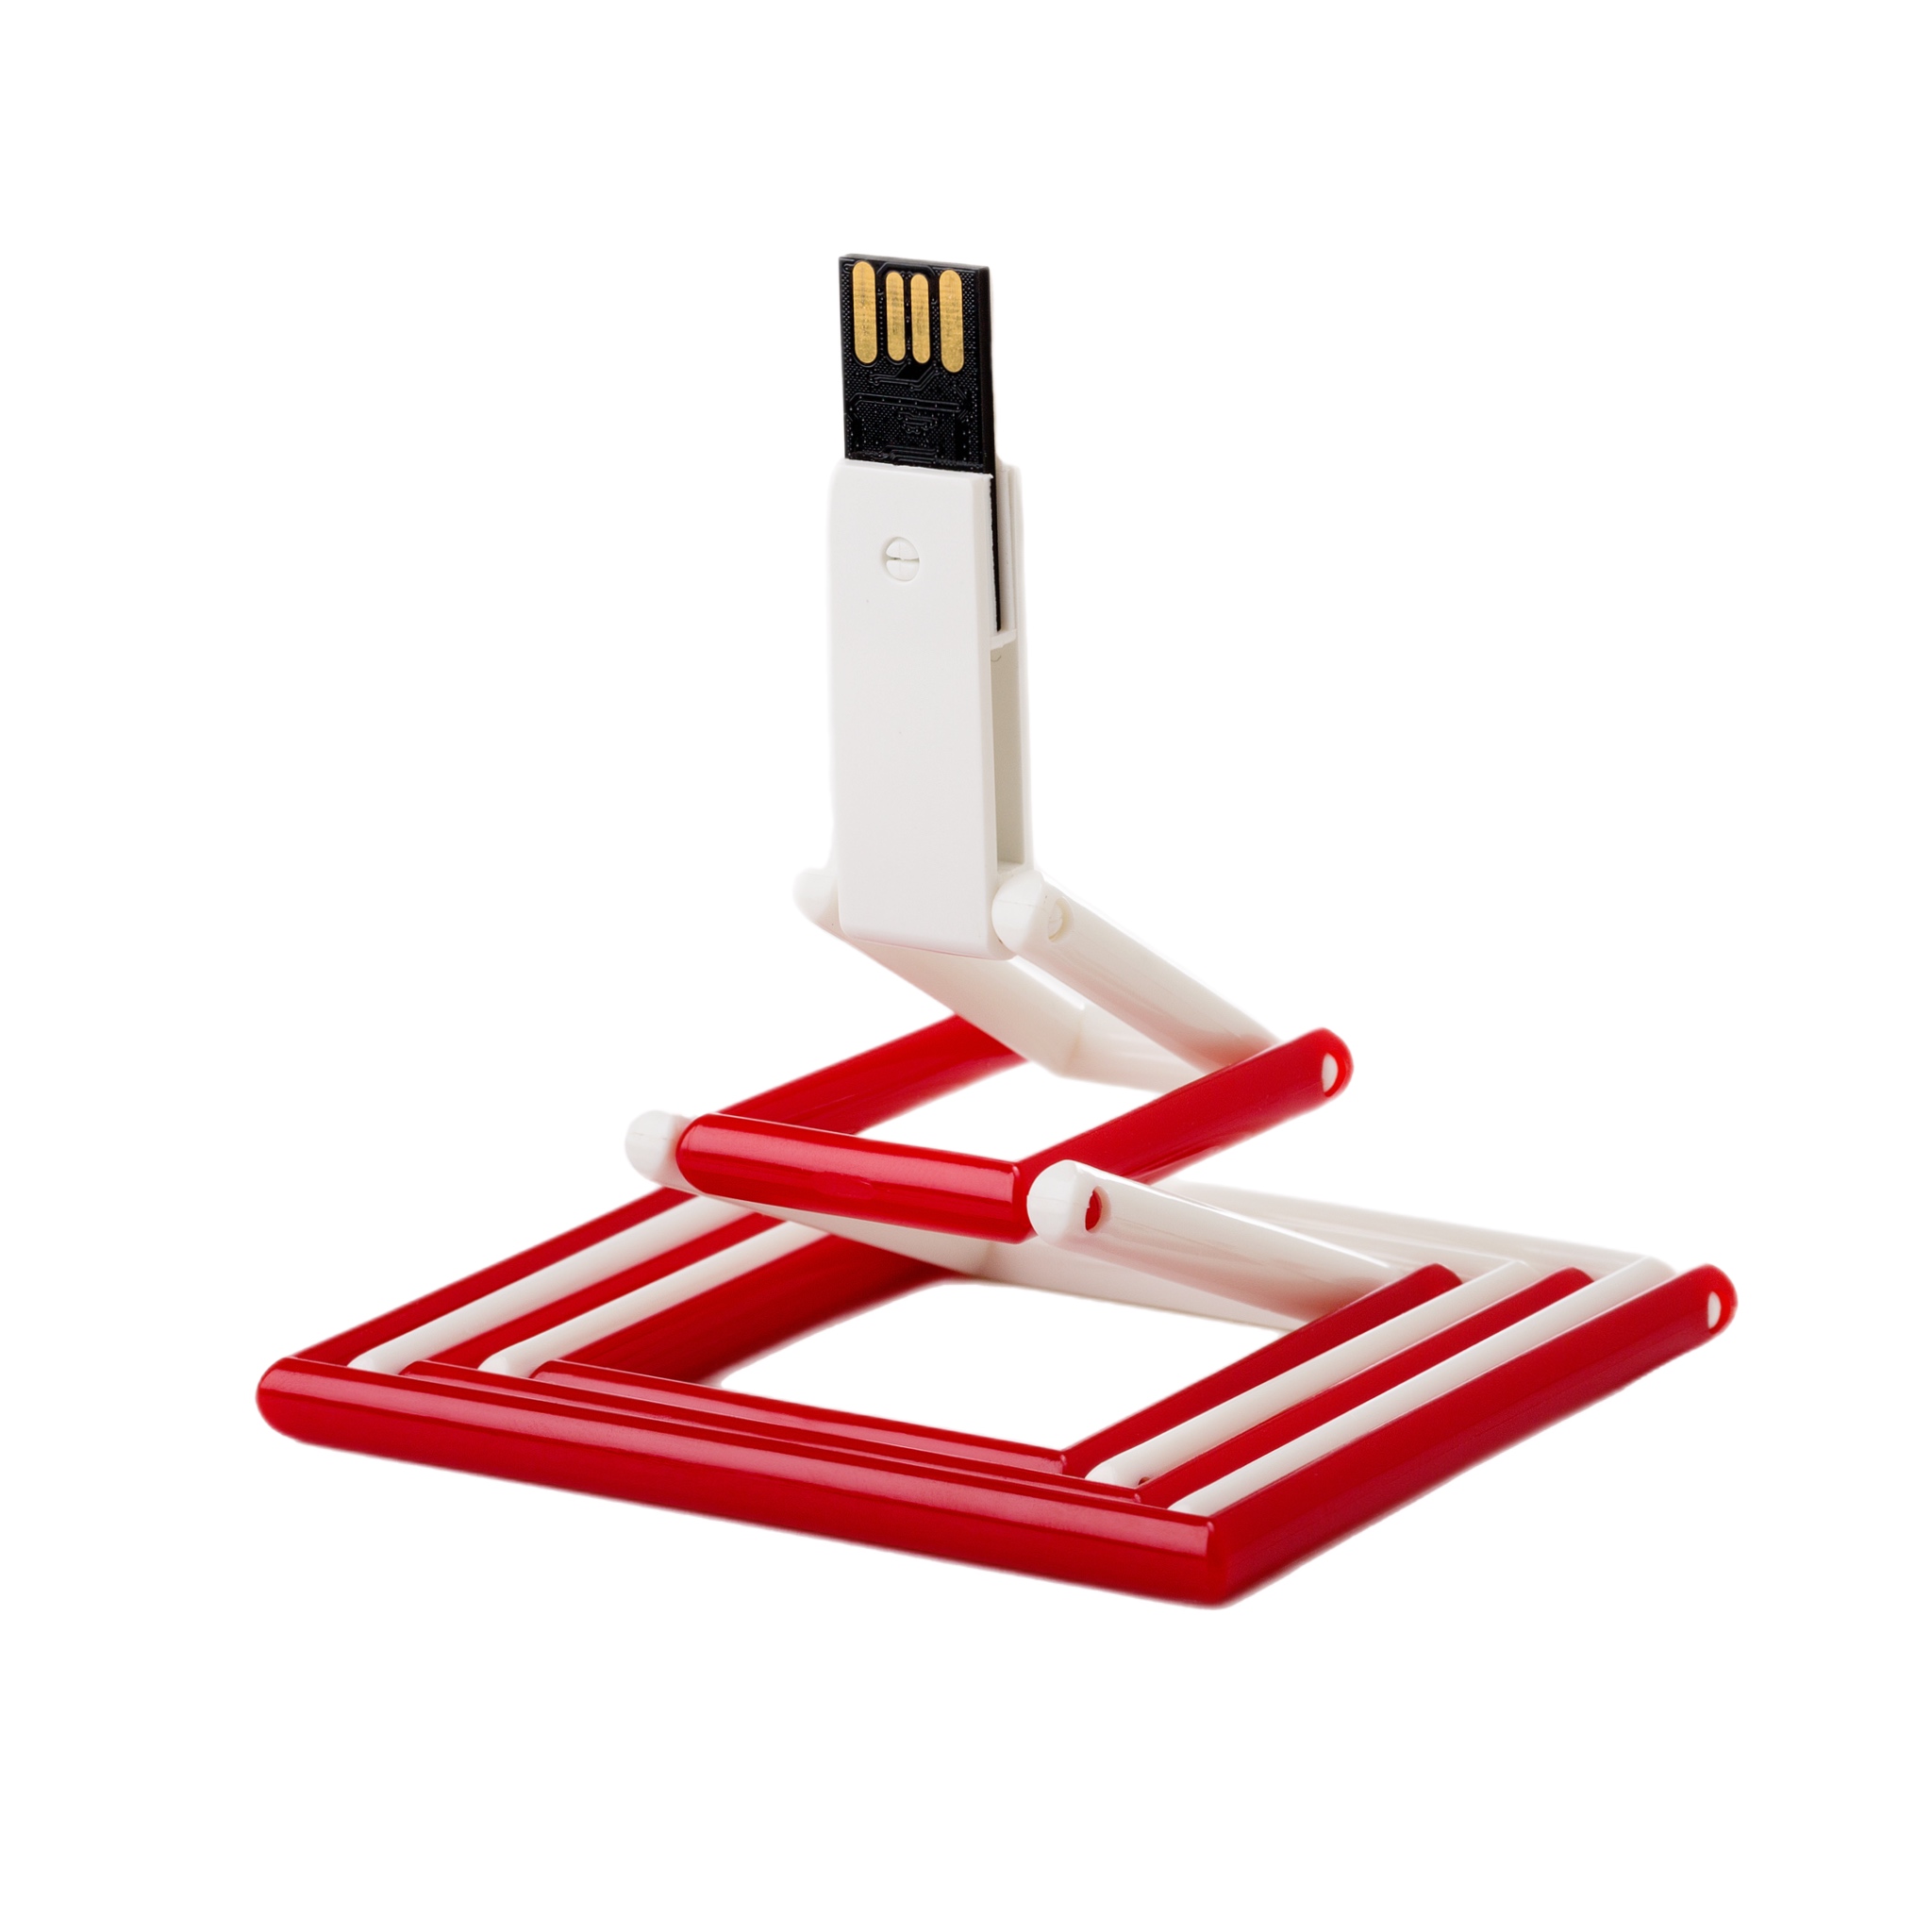 USB-флешка модель 119, (USB 2.0),  объем памяти 16 GB, цвет белый/красный